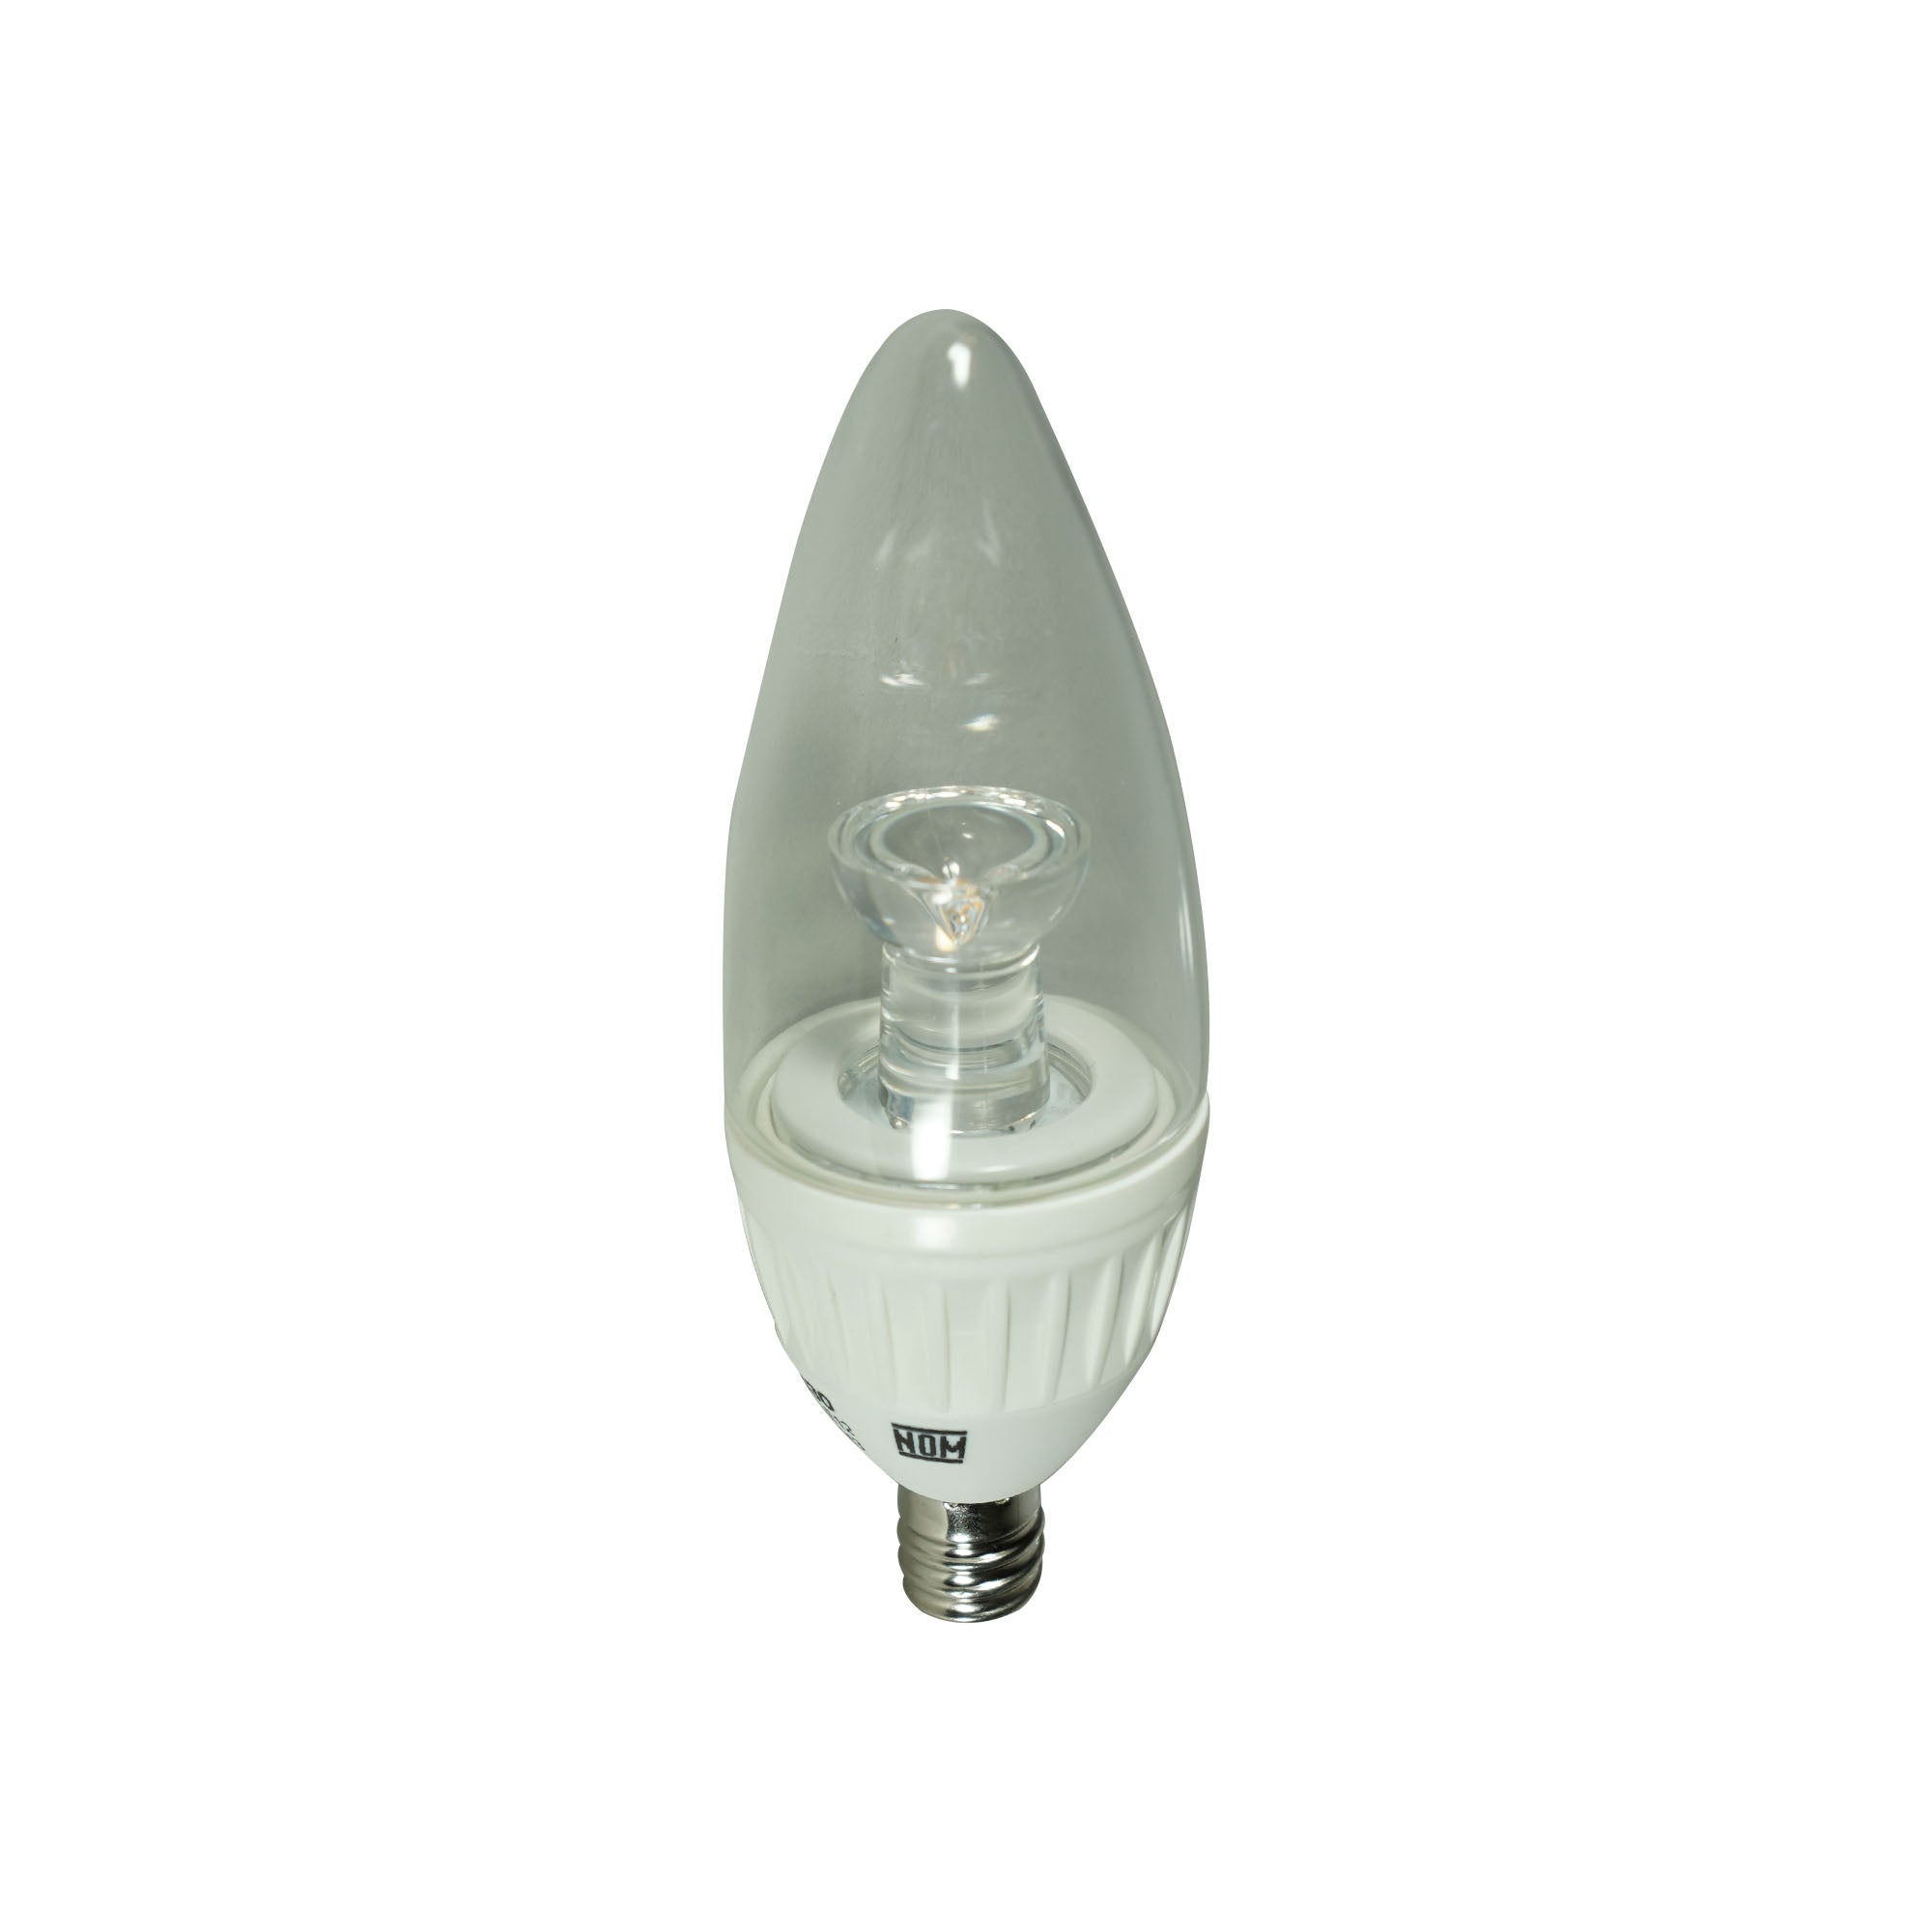 Lámpara LED Tipo Vela de 5W, 127V~ FL-10B11E12.530